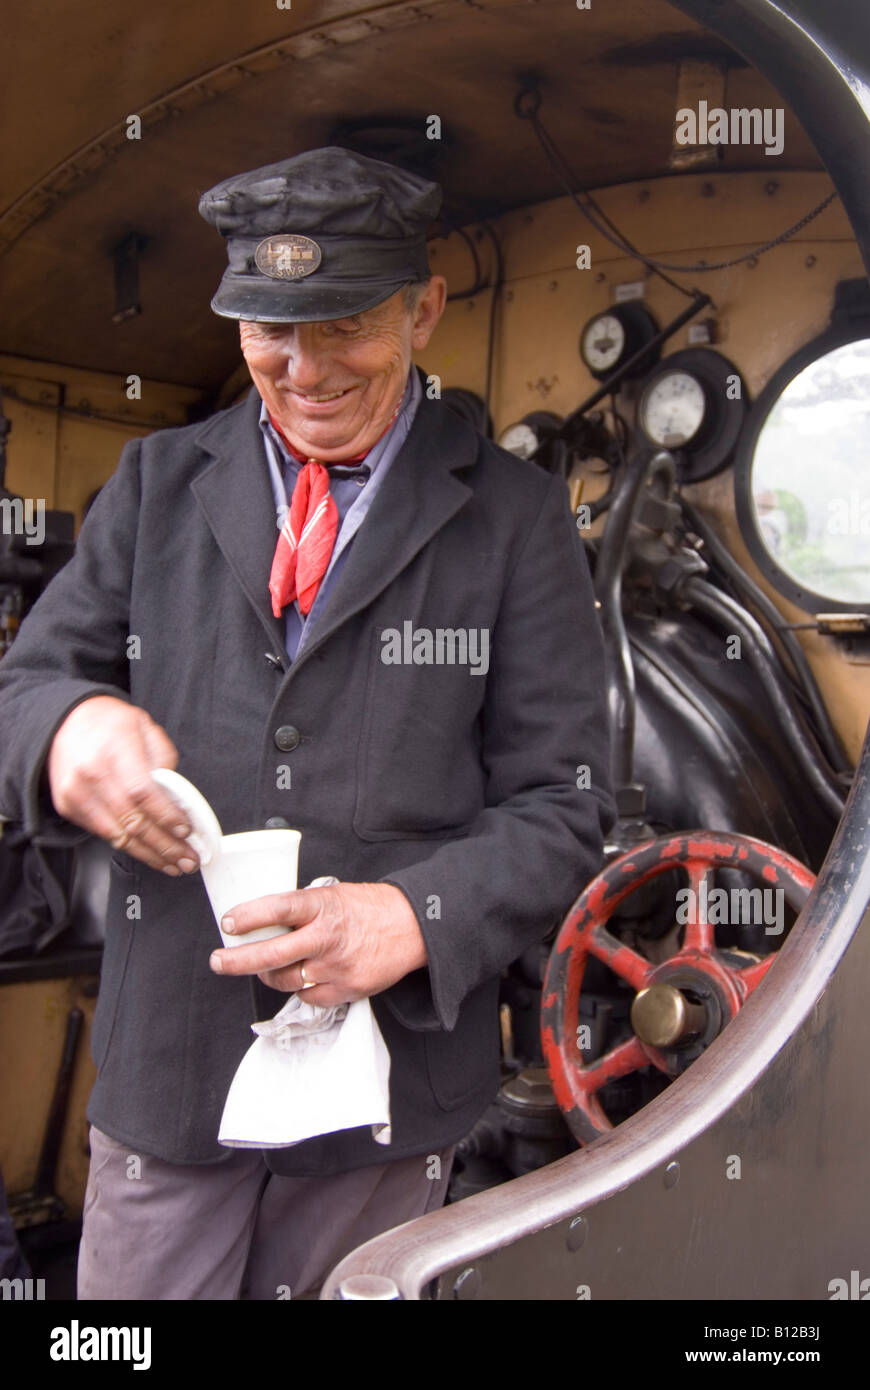 Le pilote du moteur ayant une pause thé sur la Station de Train à vapeur à Sheringham, Norfolk, Royaume-Uni Banque D'Images